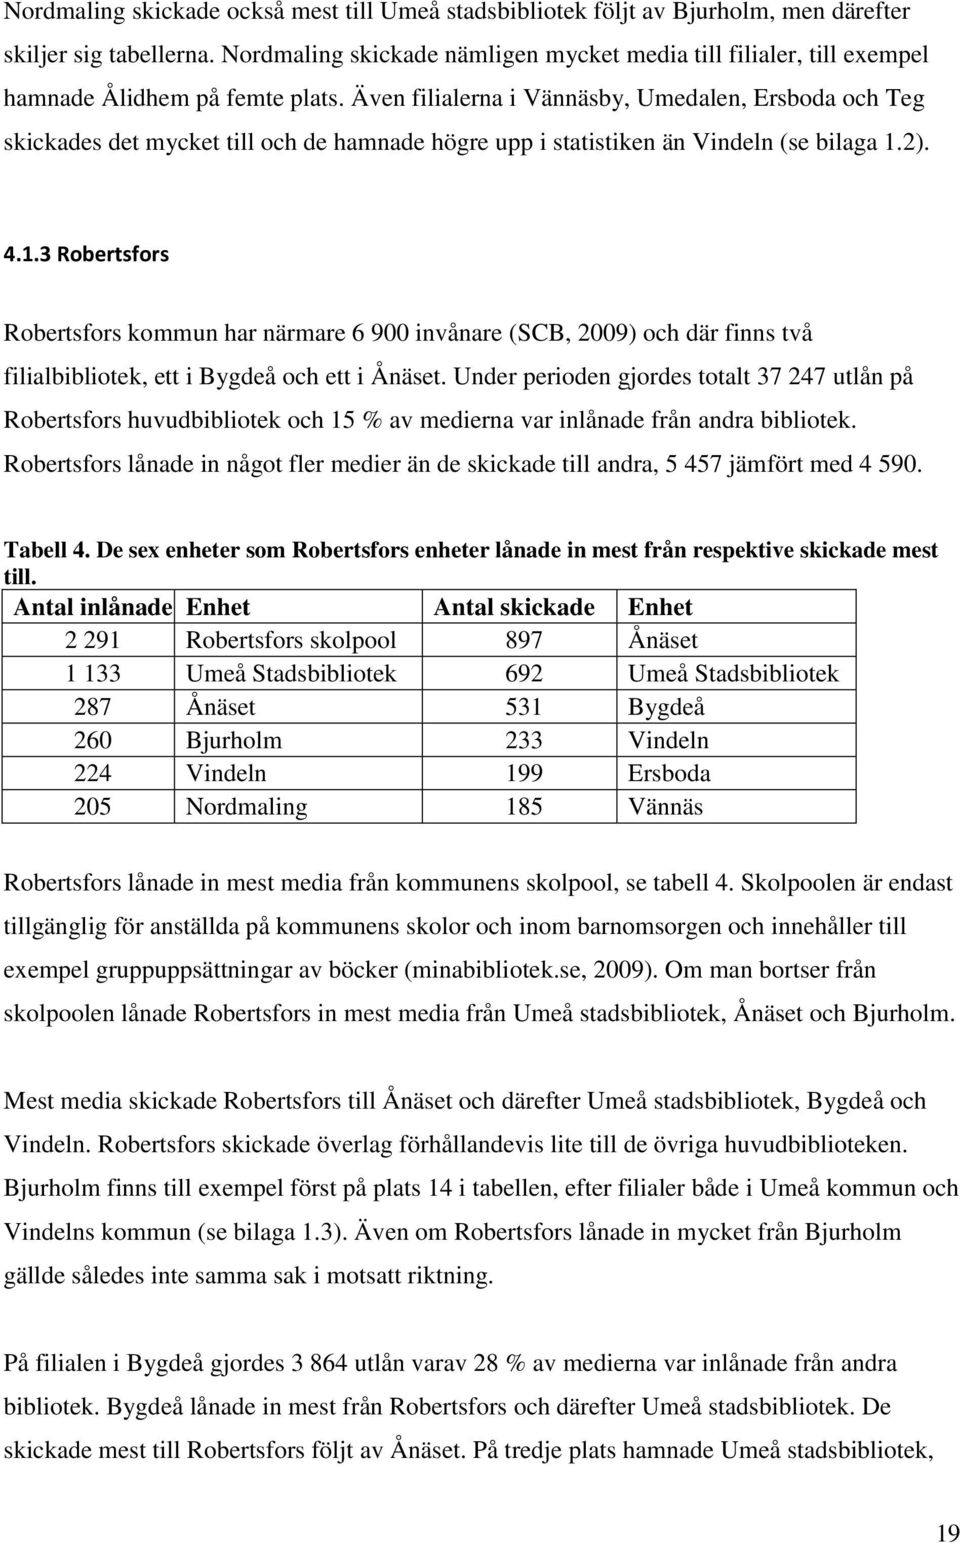 Även filialerna i Vännäsby, Umedalen, Ersboda och Teg skickades det mycket till och de hamnade högre upp i statistiken än Vindeln (se bilaga 1.